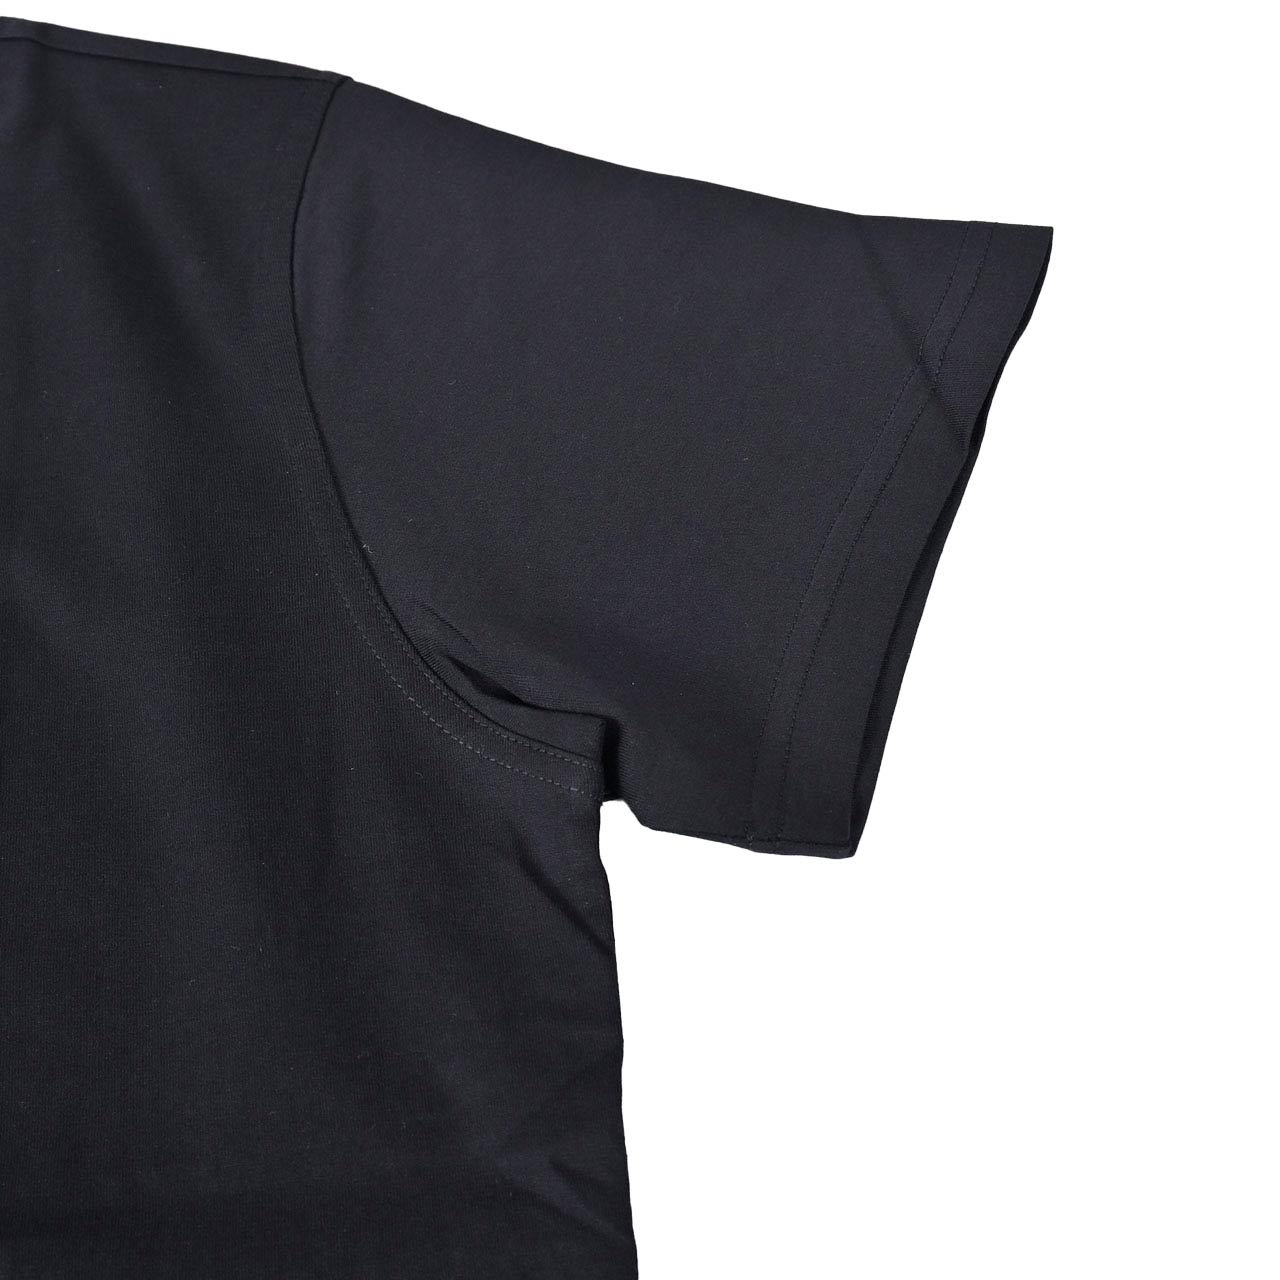 ジバンシィ GIVENCHY Tシャツ BM70SC3002 001 ブラック  メンズ